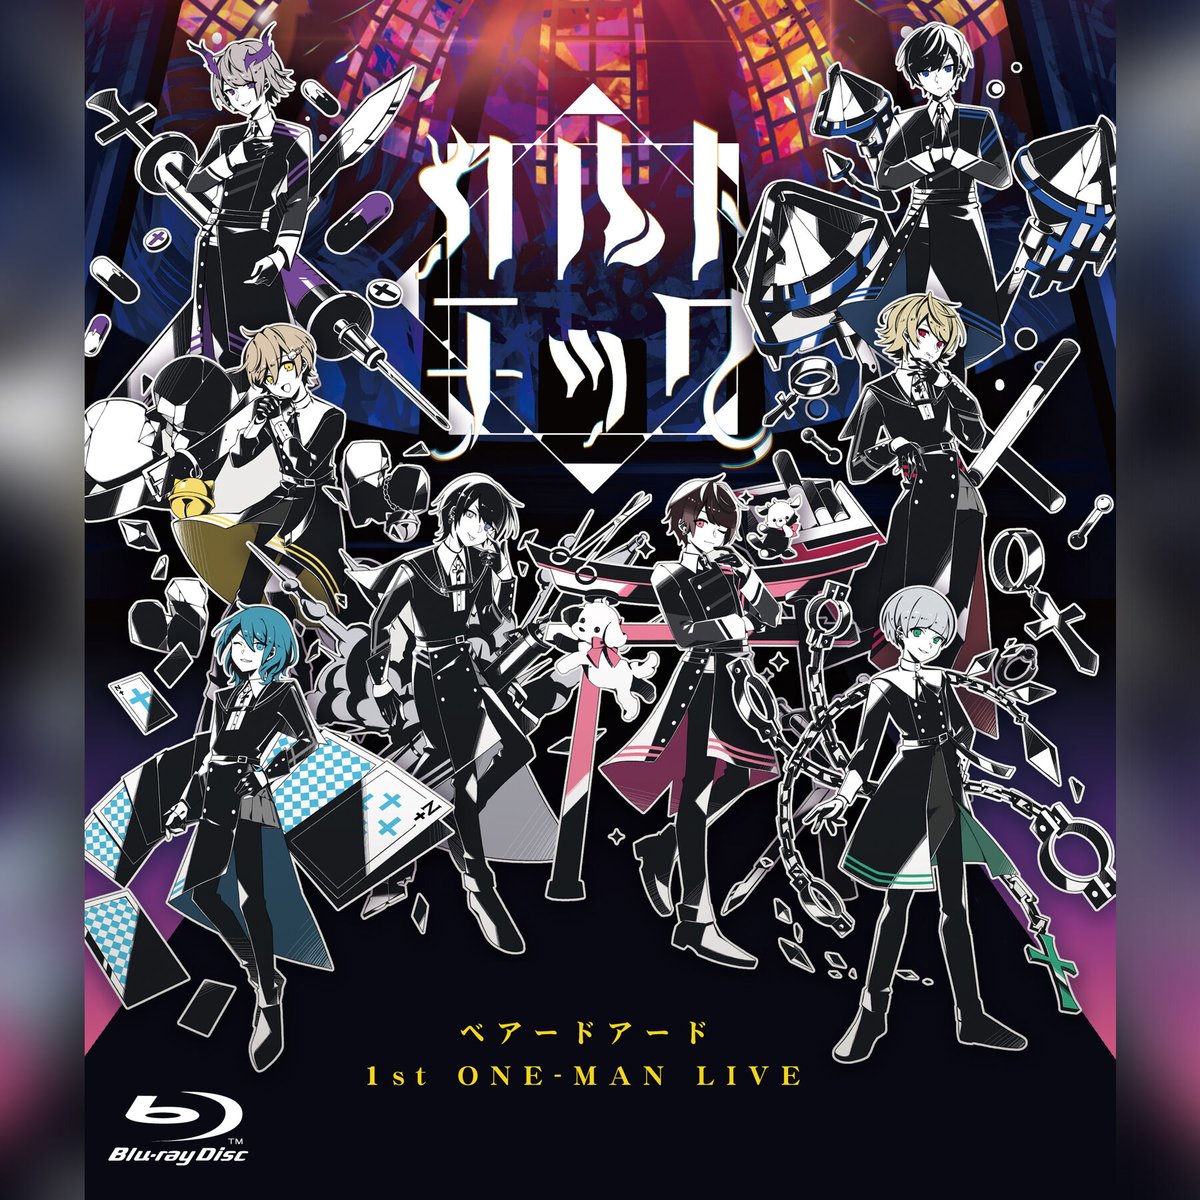 【花譜】3rd ONE-MAN LIVE「不可解参(狂)」Blu-rayVWP